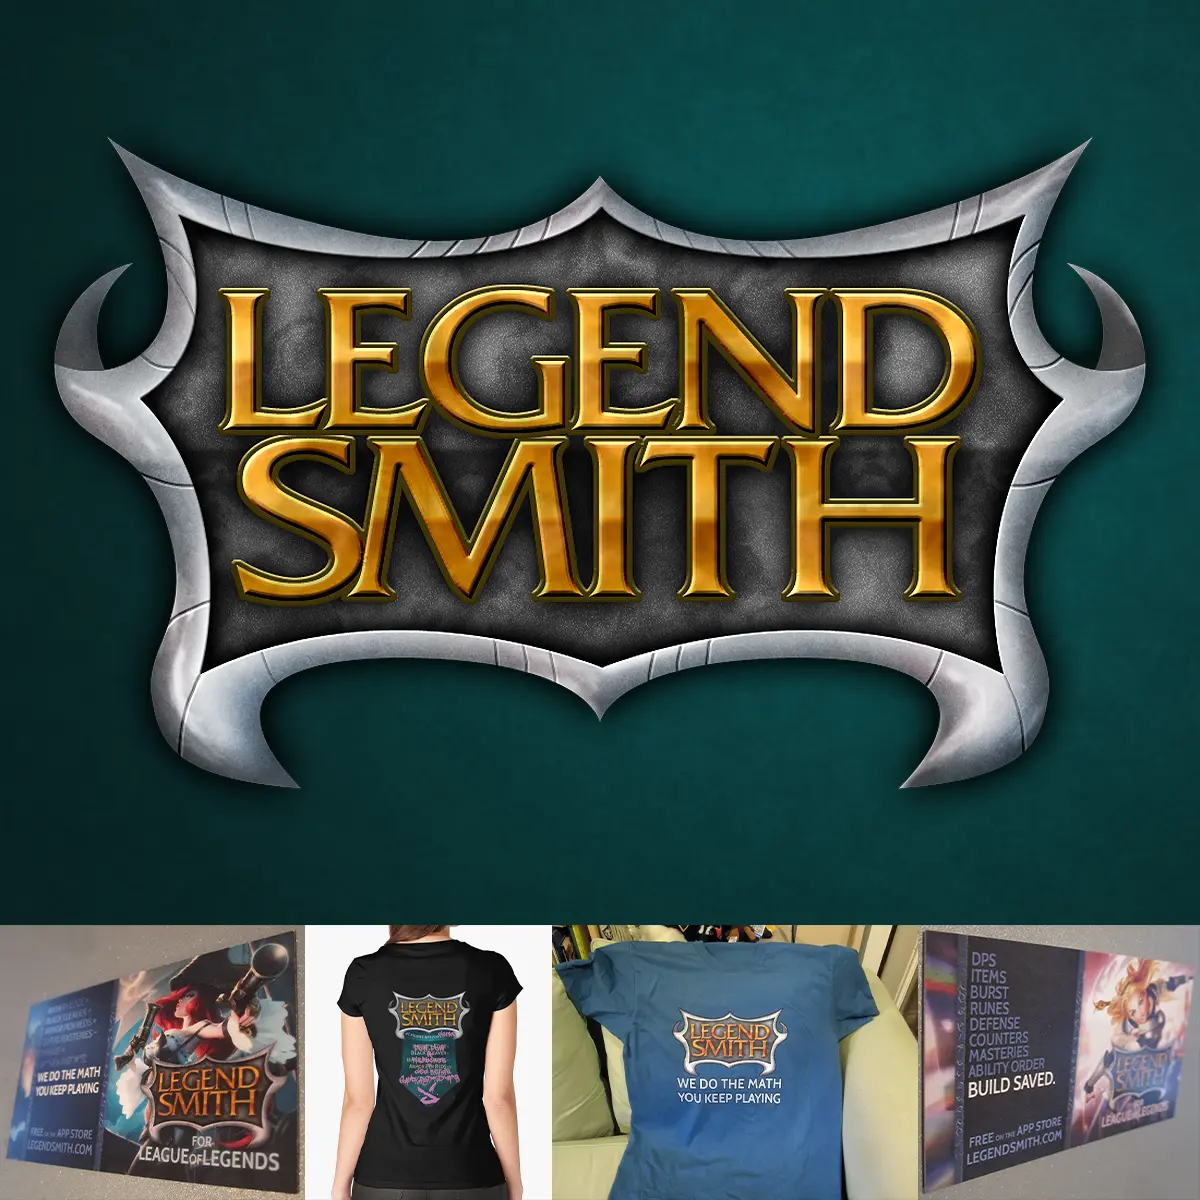 LegendSmith Logo and Merchandise